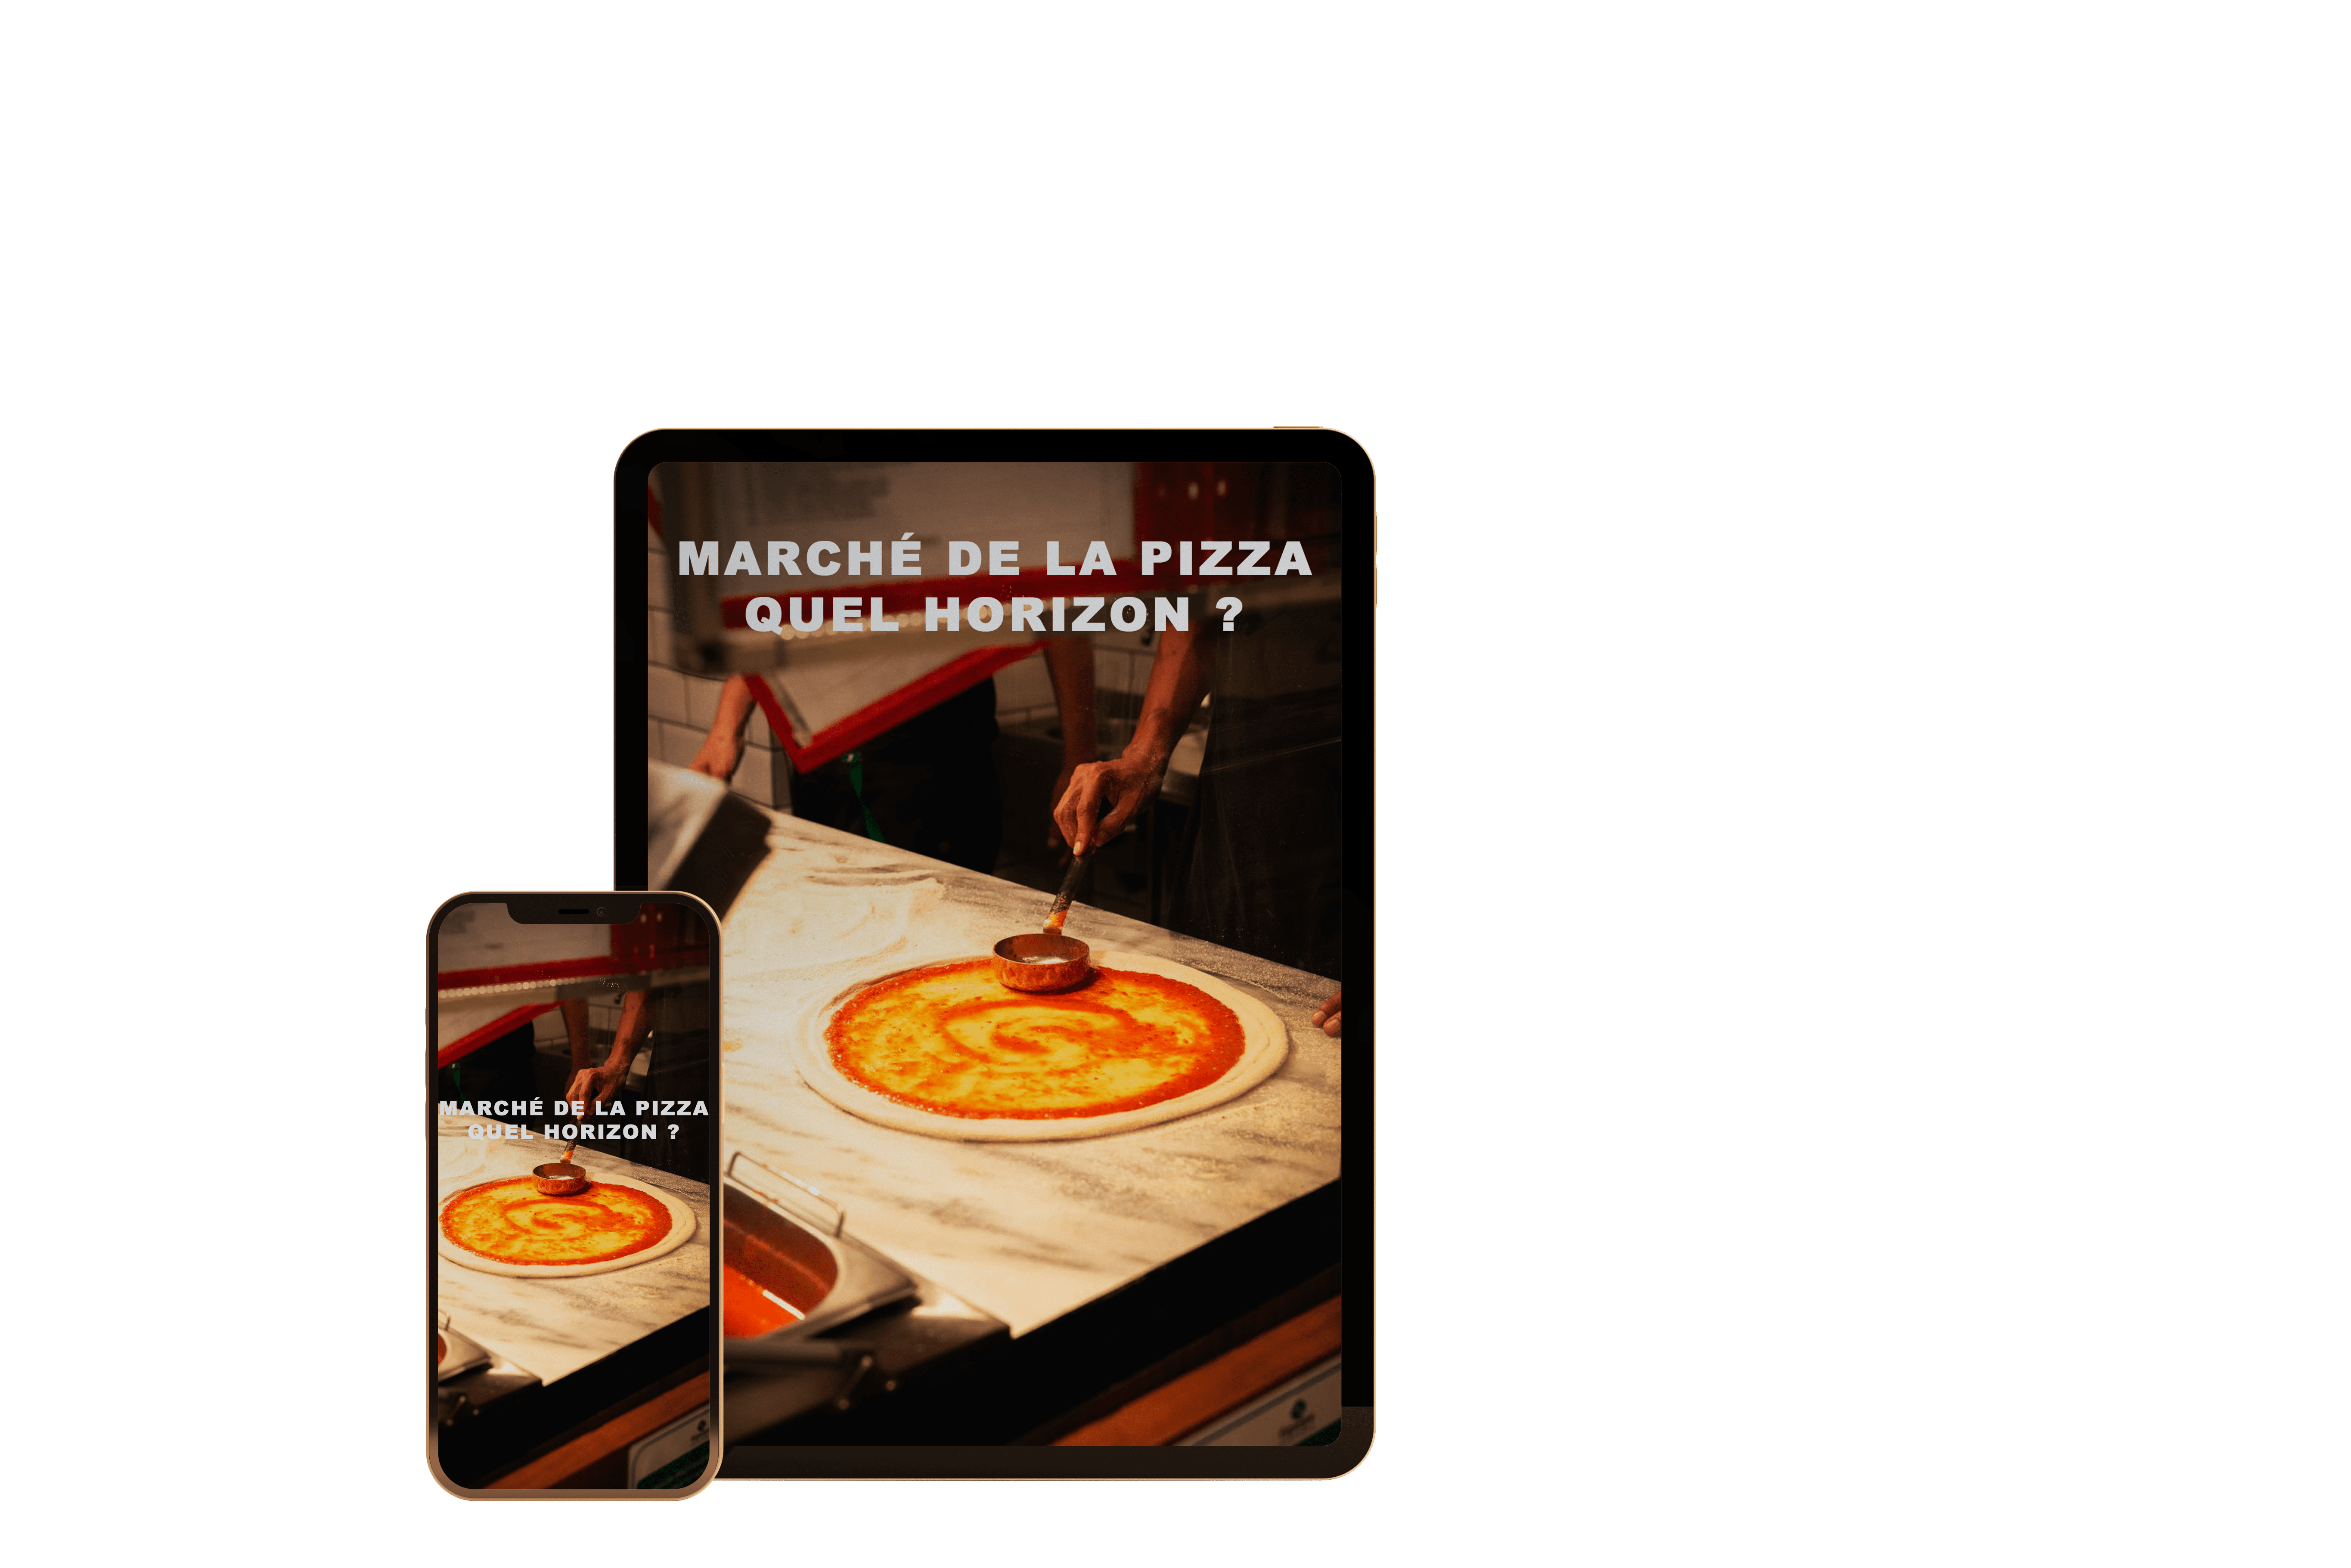 calcul-du-prix-de-revient-comment-determiner-le-cout-reel-de-fabrication-dune-pizza